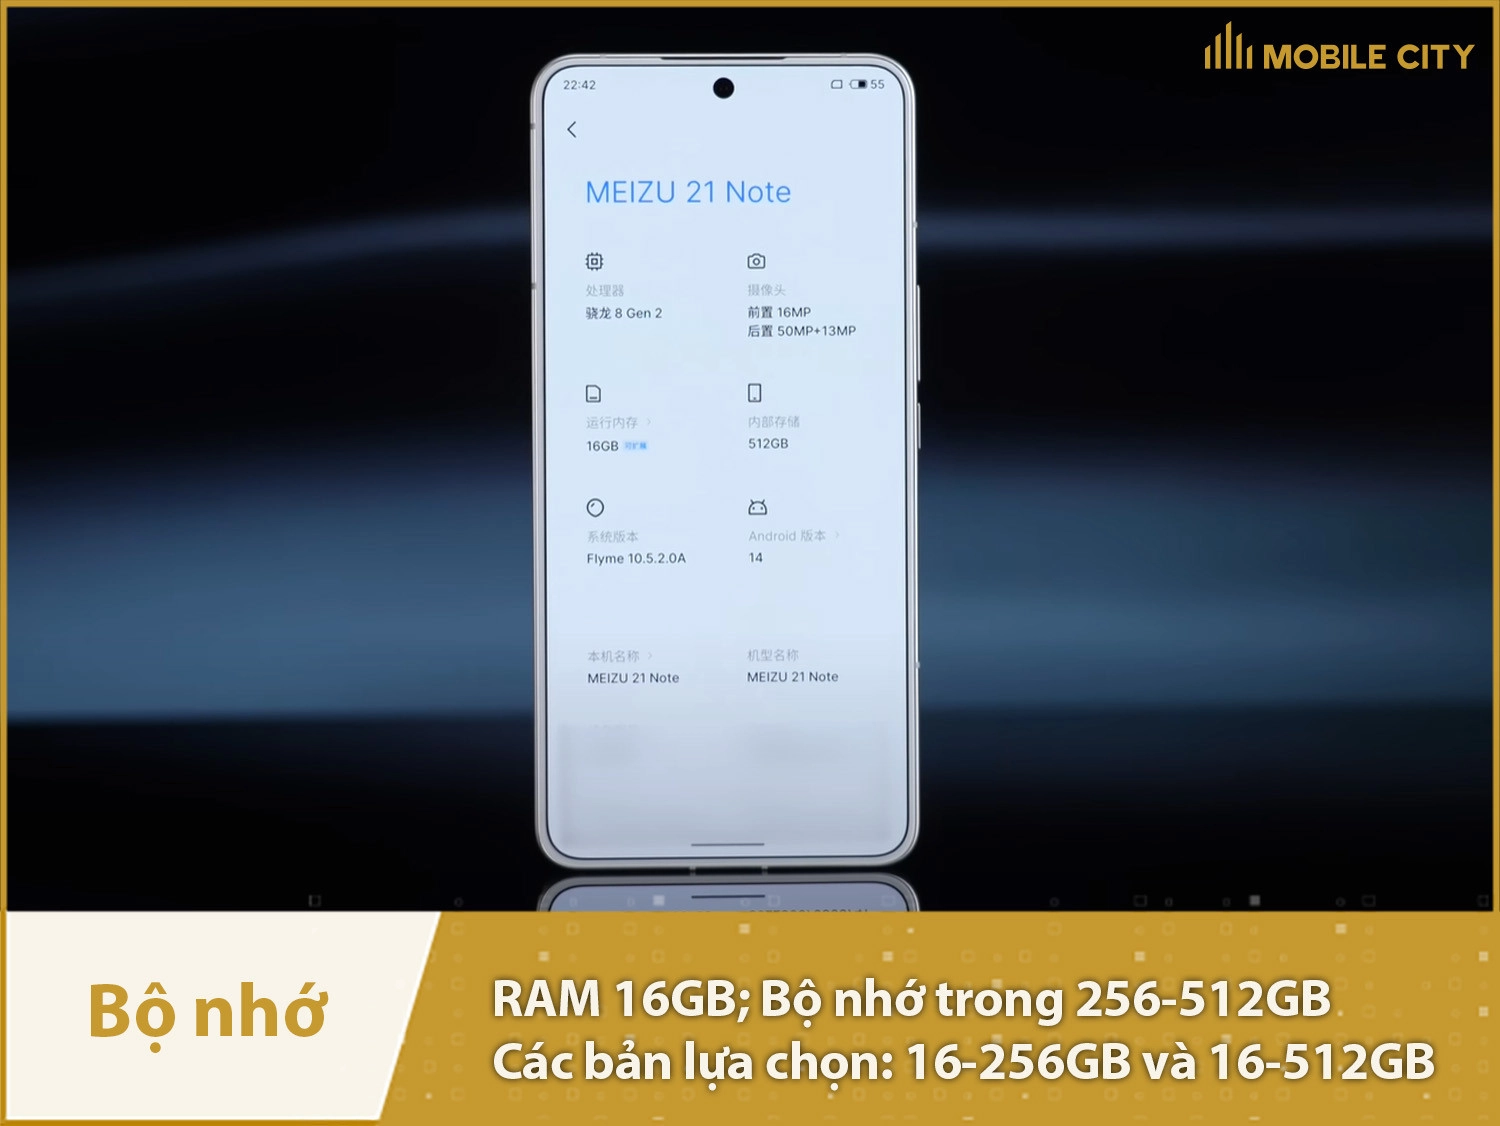 Meizu 21 Note có các phiên bản bộ nhớ: 256GB và 512GB